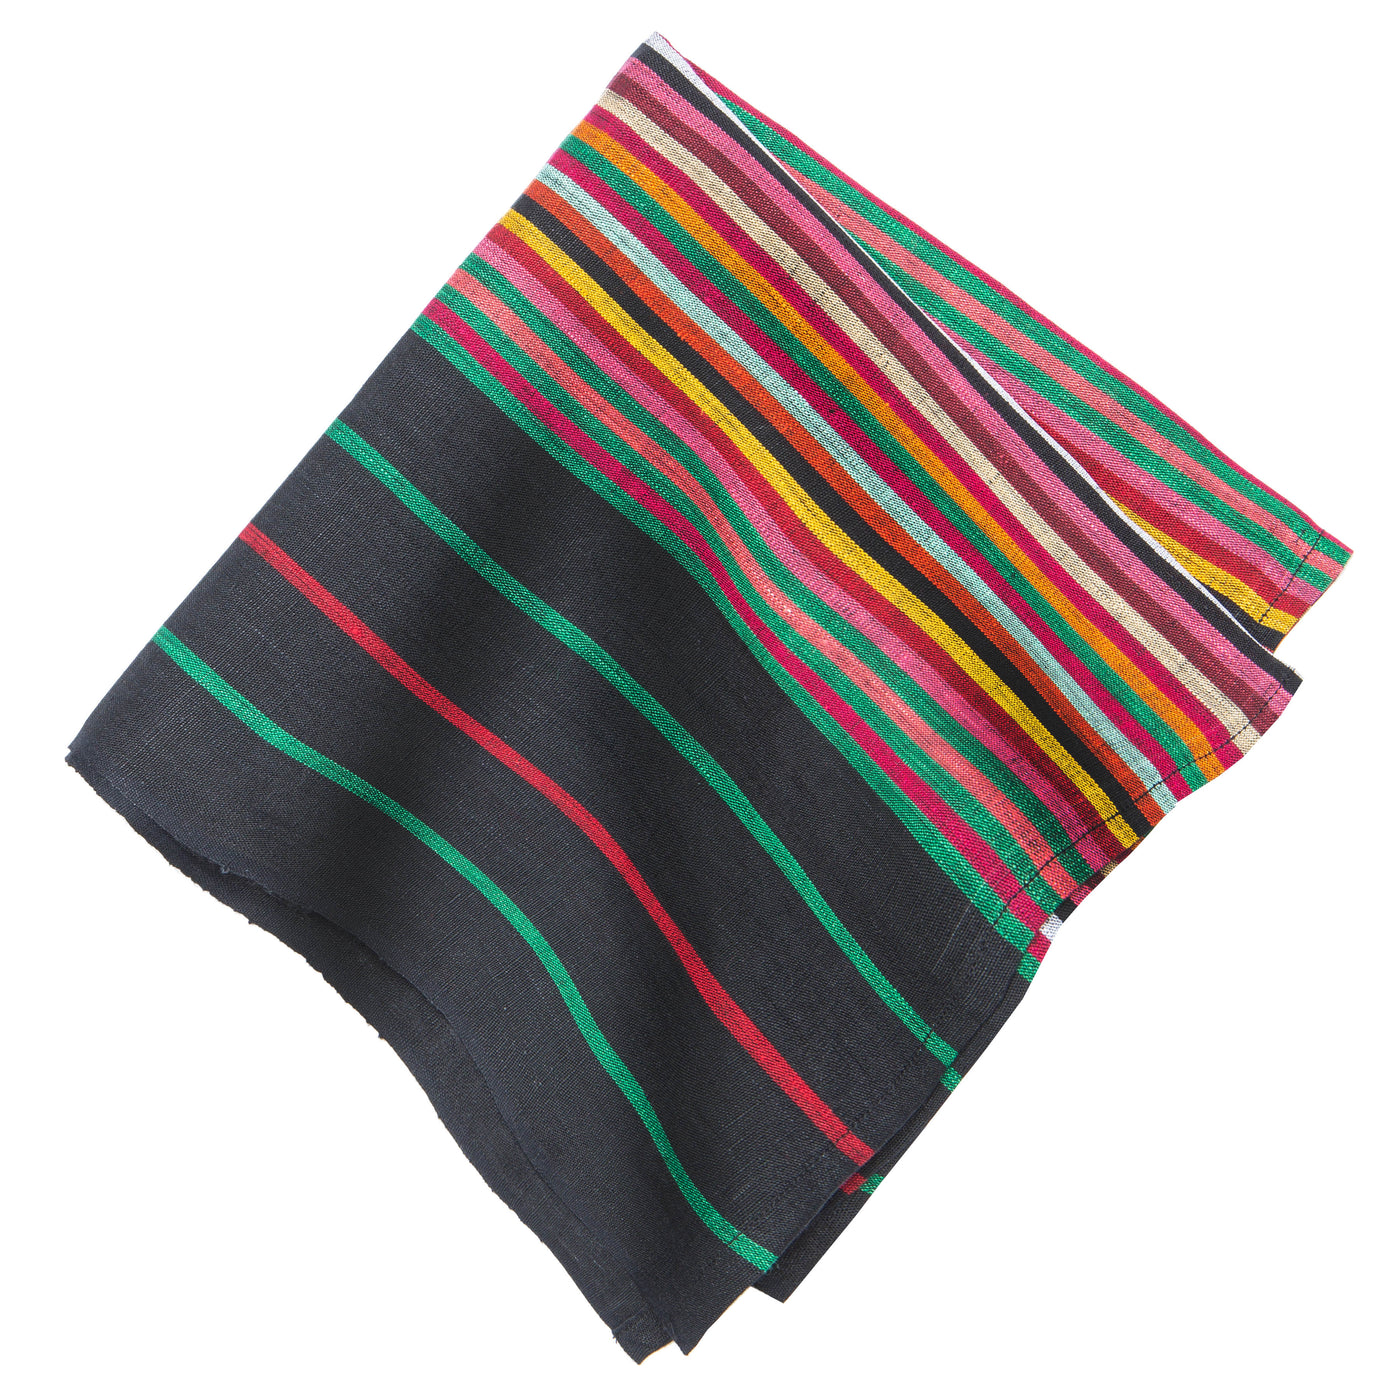 Multi Stripes "Black" Napkins 20x20 - Set of 4